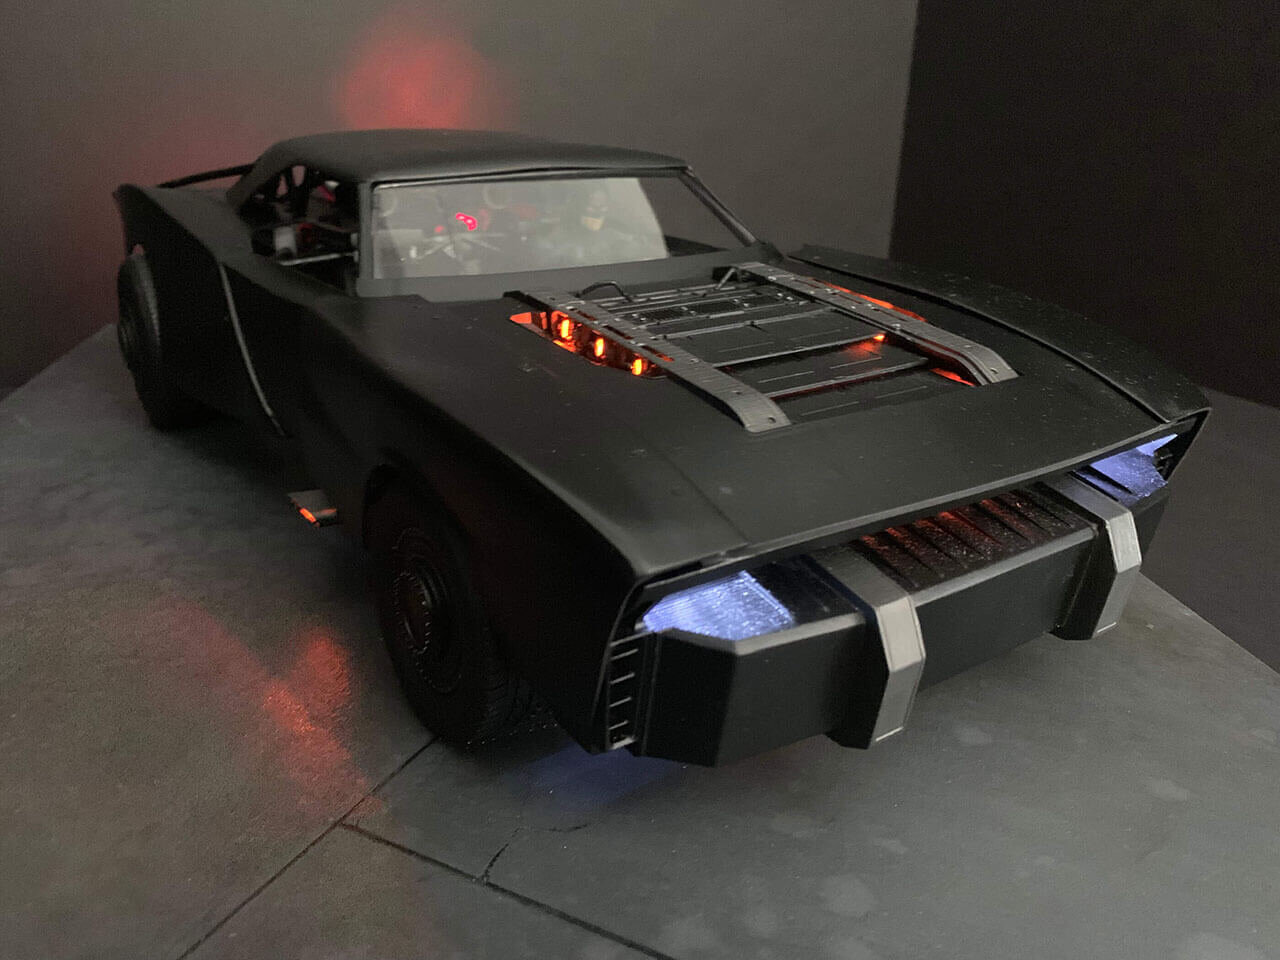 Cận cảnh mô hình đồ chơi xe hơi của Người Dơi được chính designer của The  Batman công bố